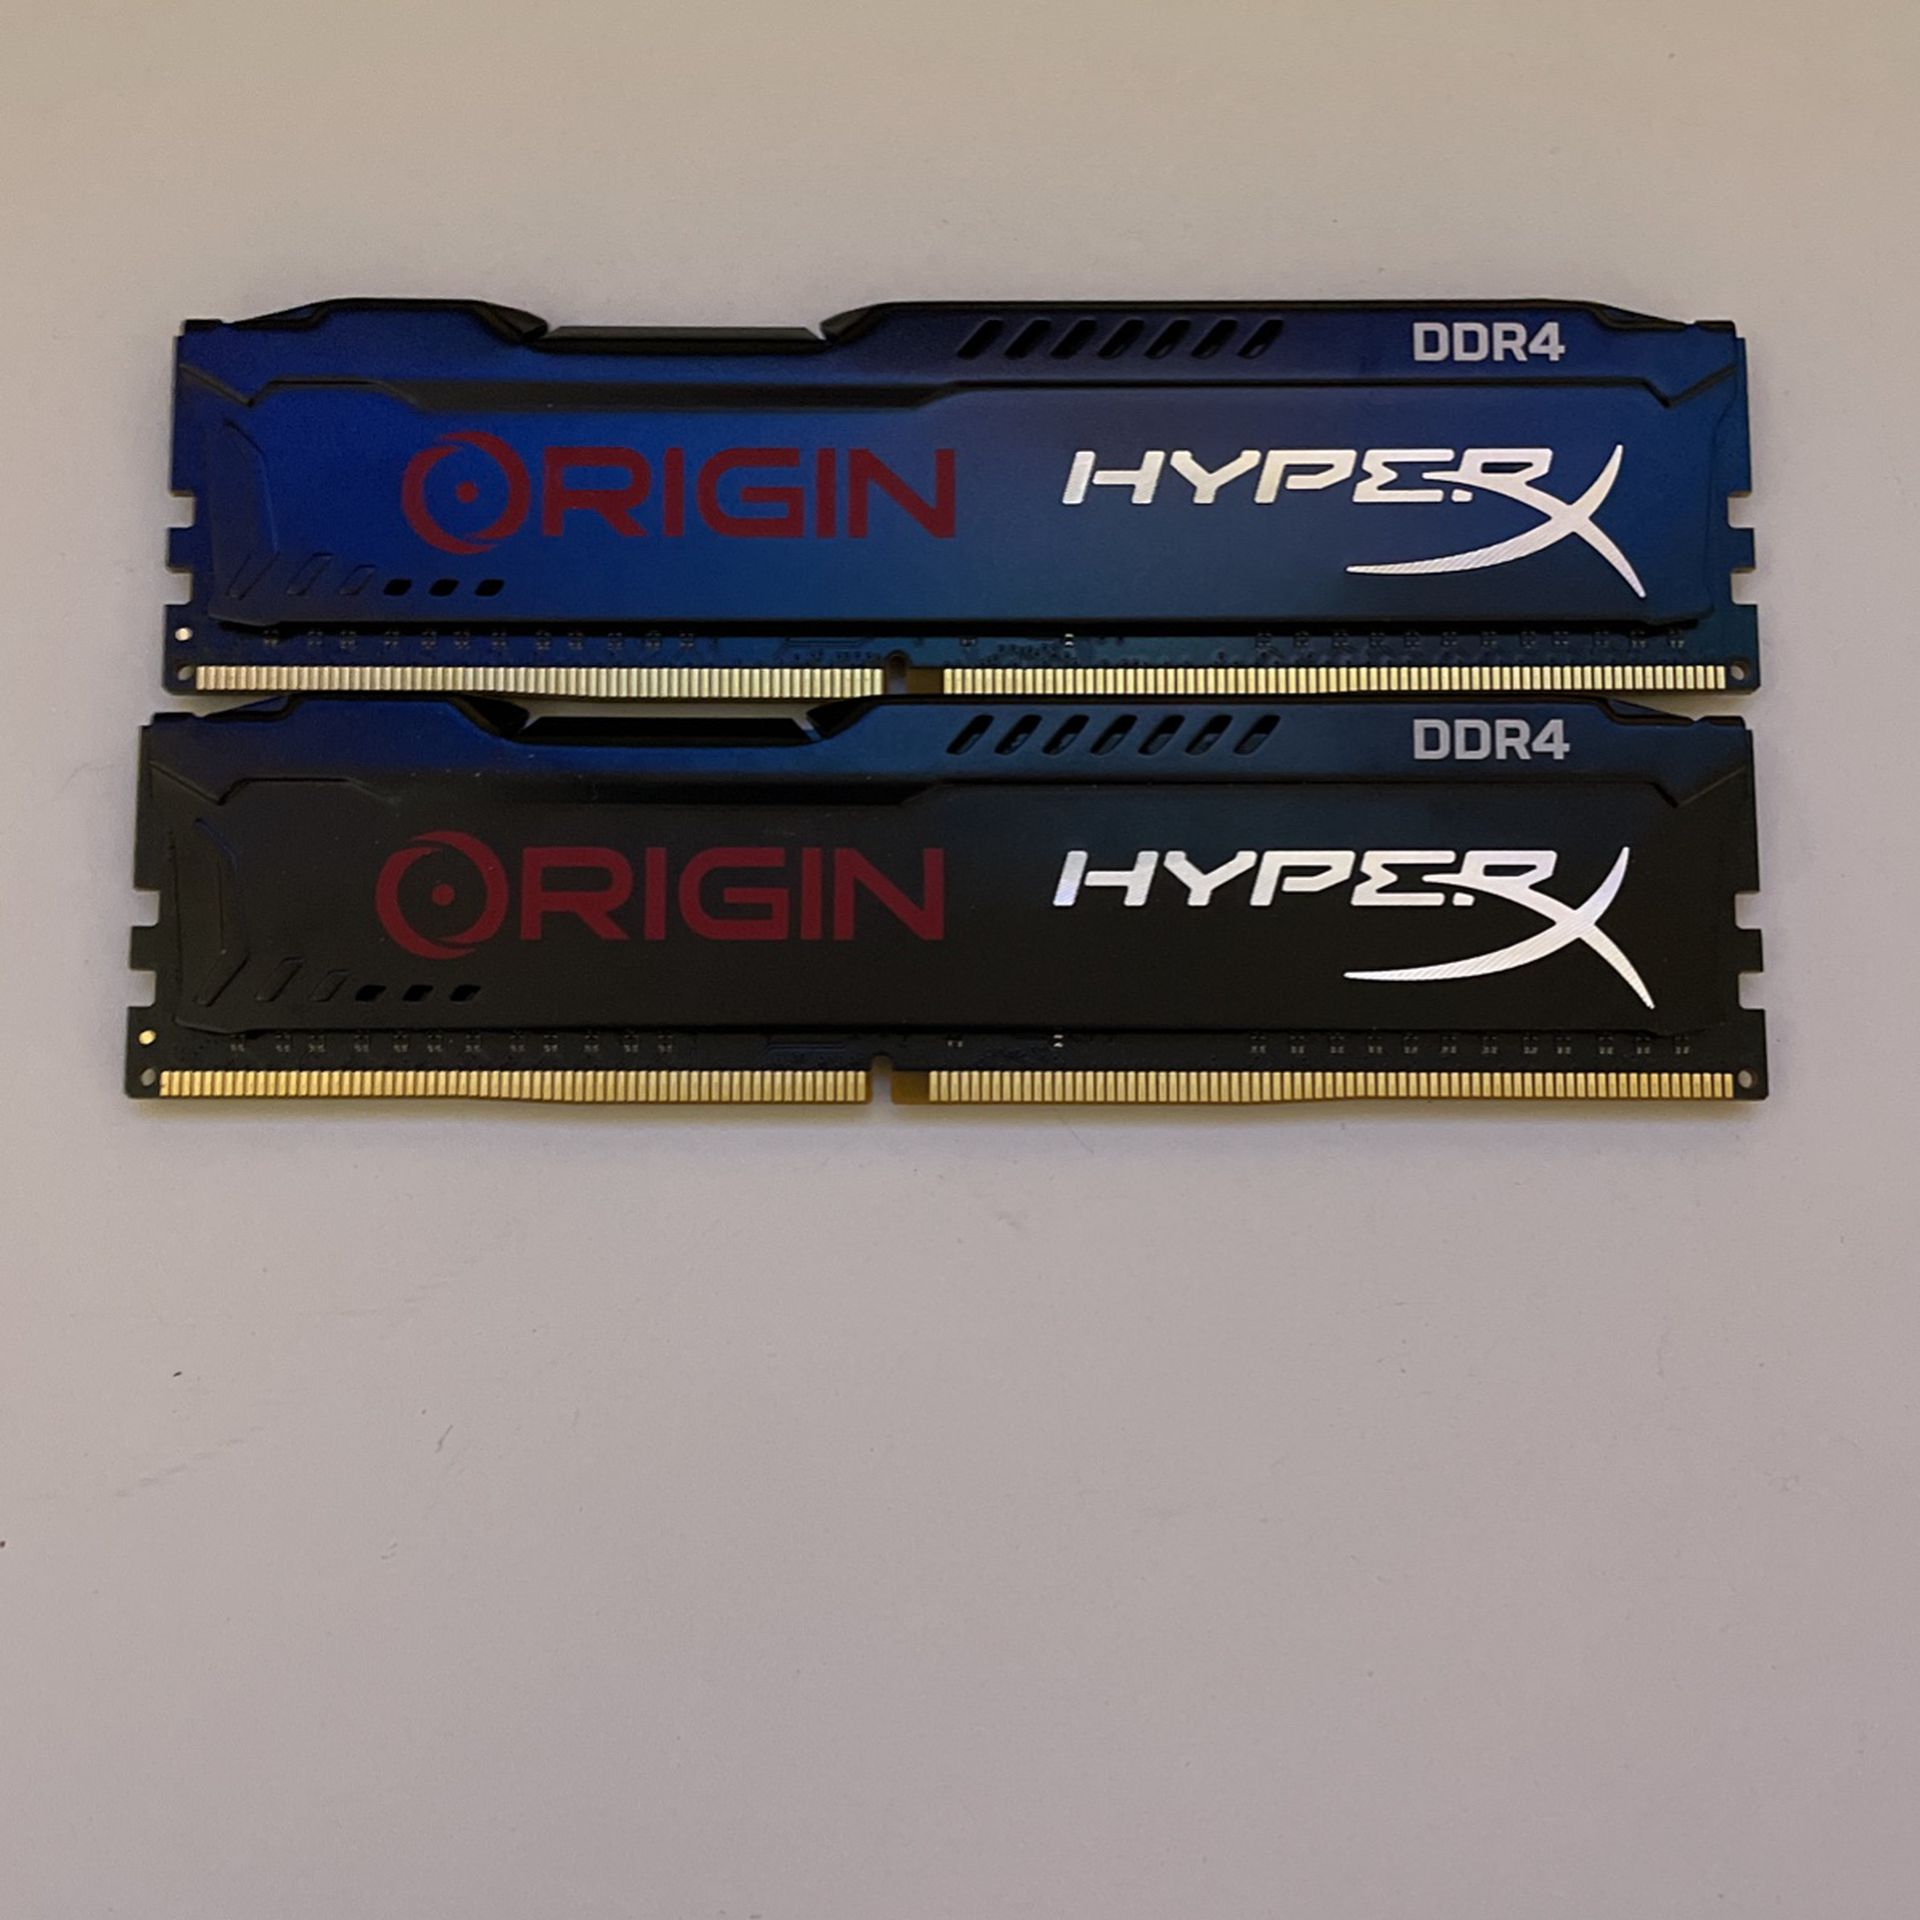 Hyper X DDR4 4gb X 2